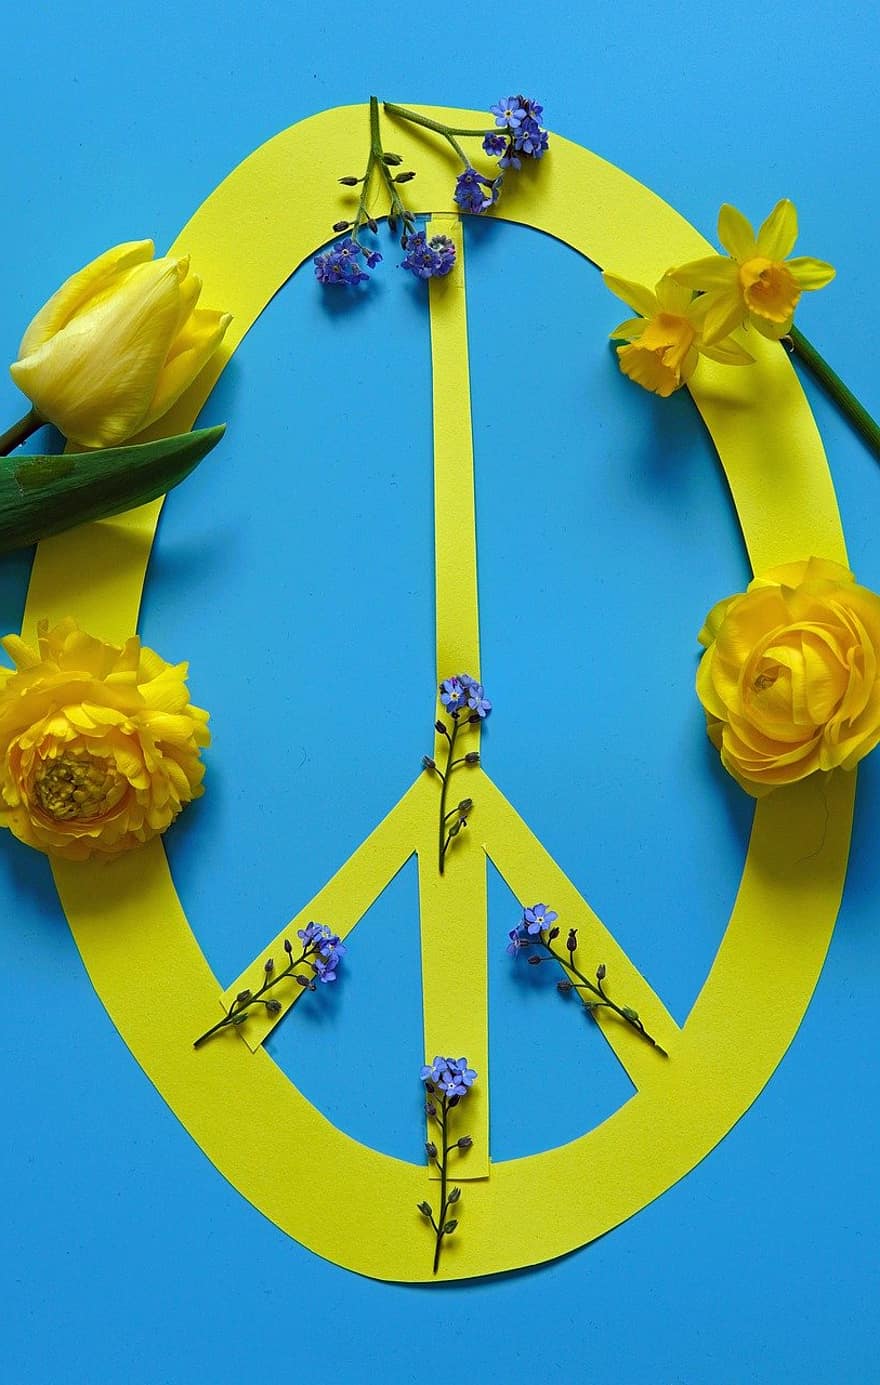 Frieden, Friedenszeichen, Gegen Krieg, Ukraine, Gelb Blau, Ukrainische Farben, Symbol, Ostern 2022, Frühling 2022, Blume, Blüten